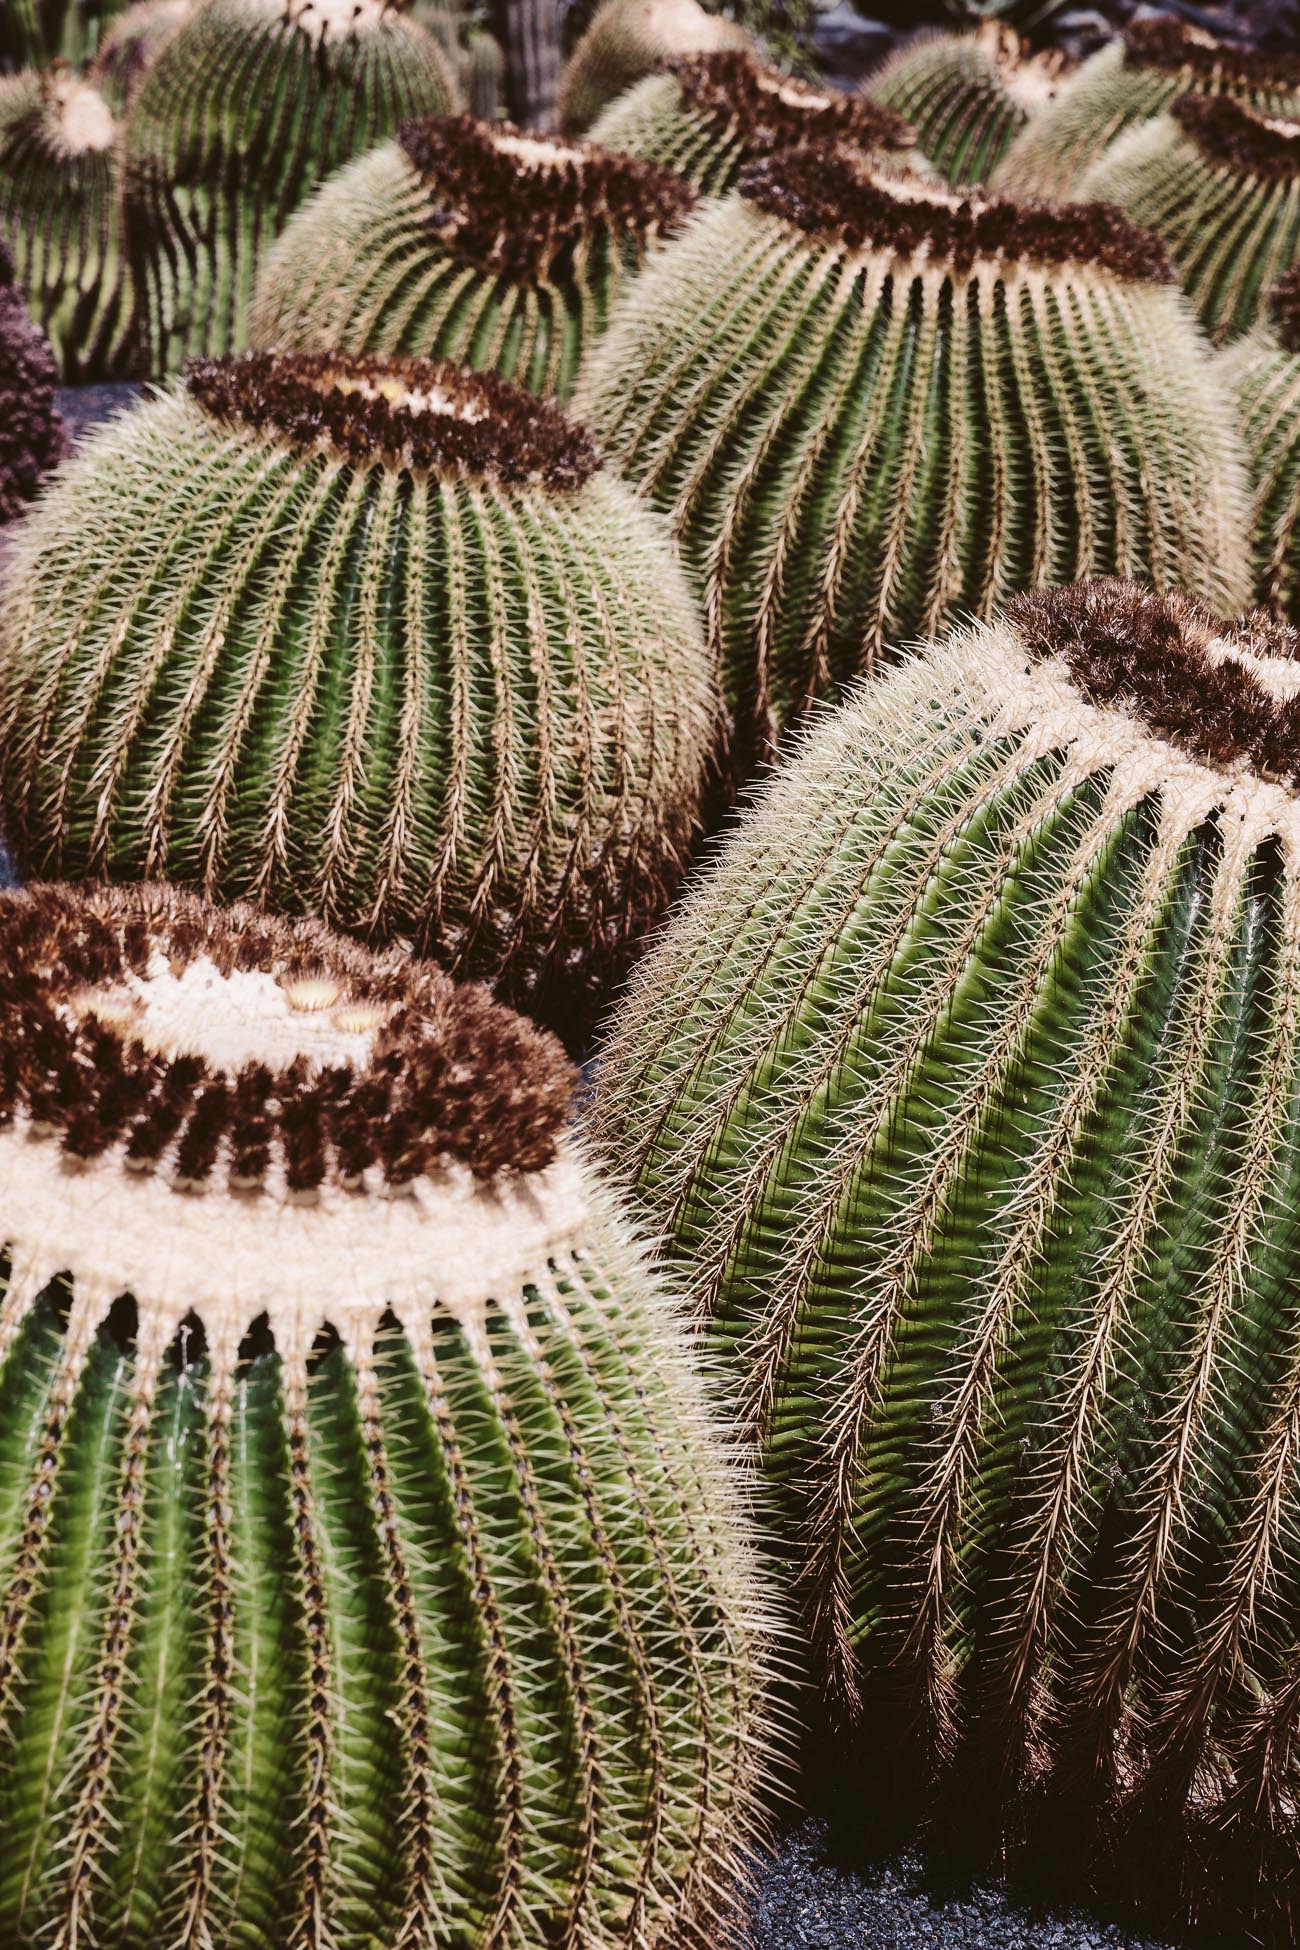 Jardín de Cactus by César Manrique in Lanzarote